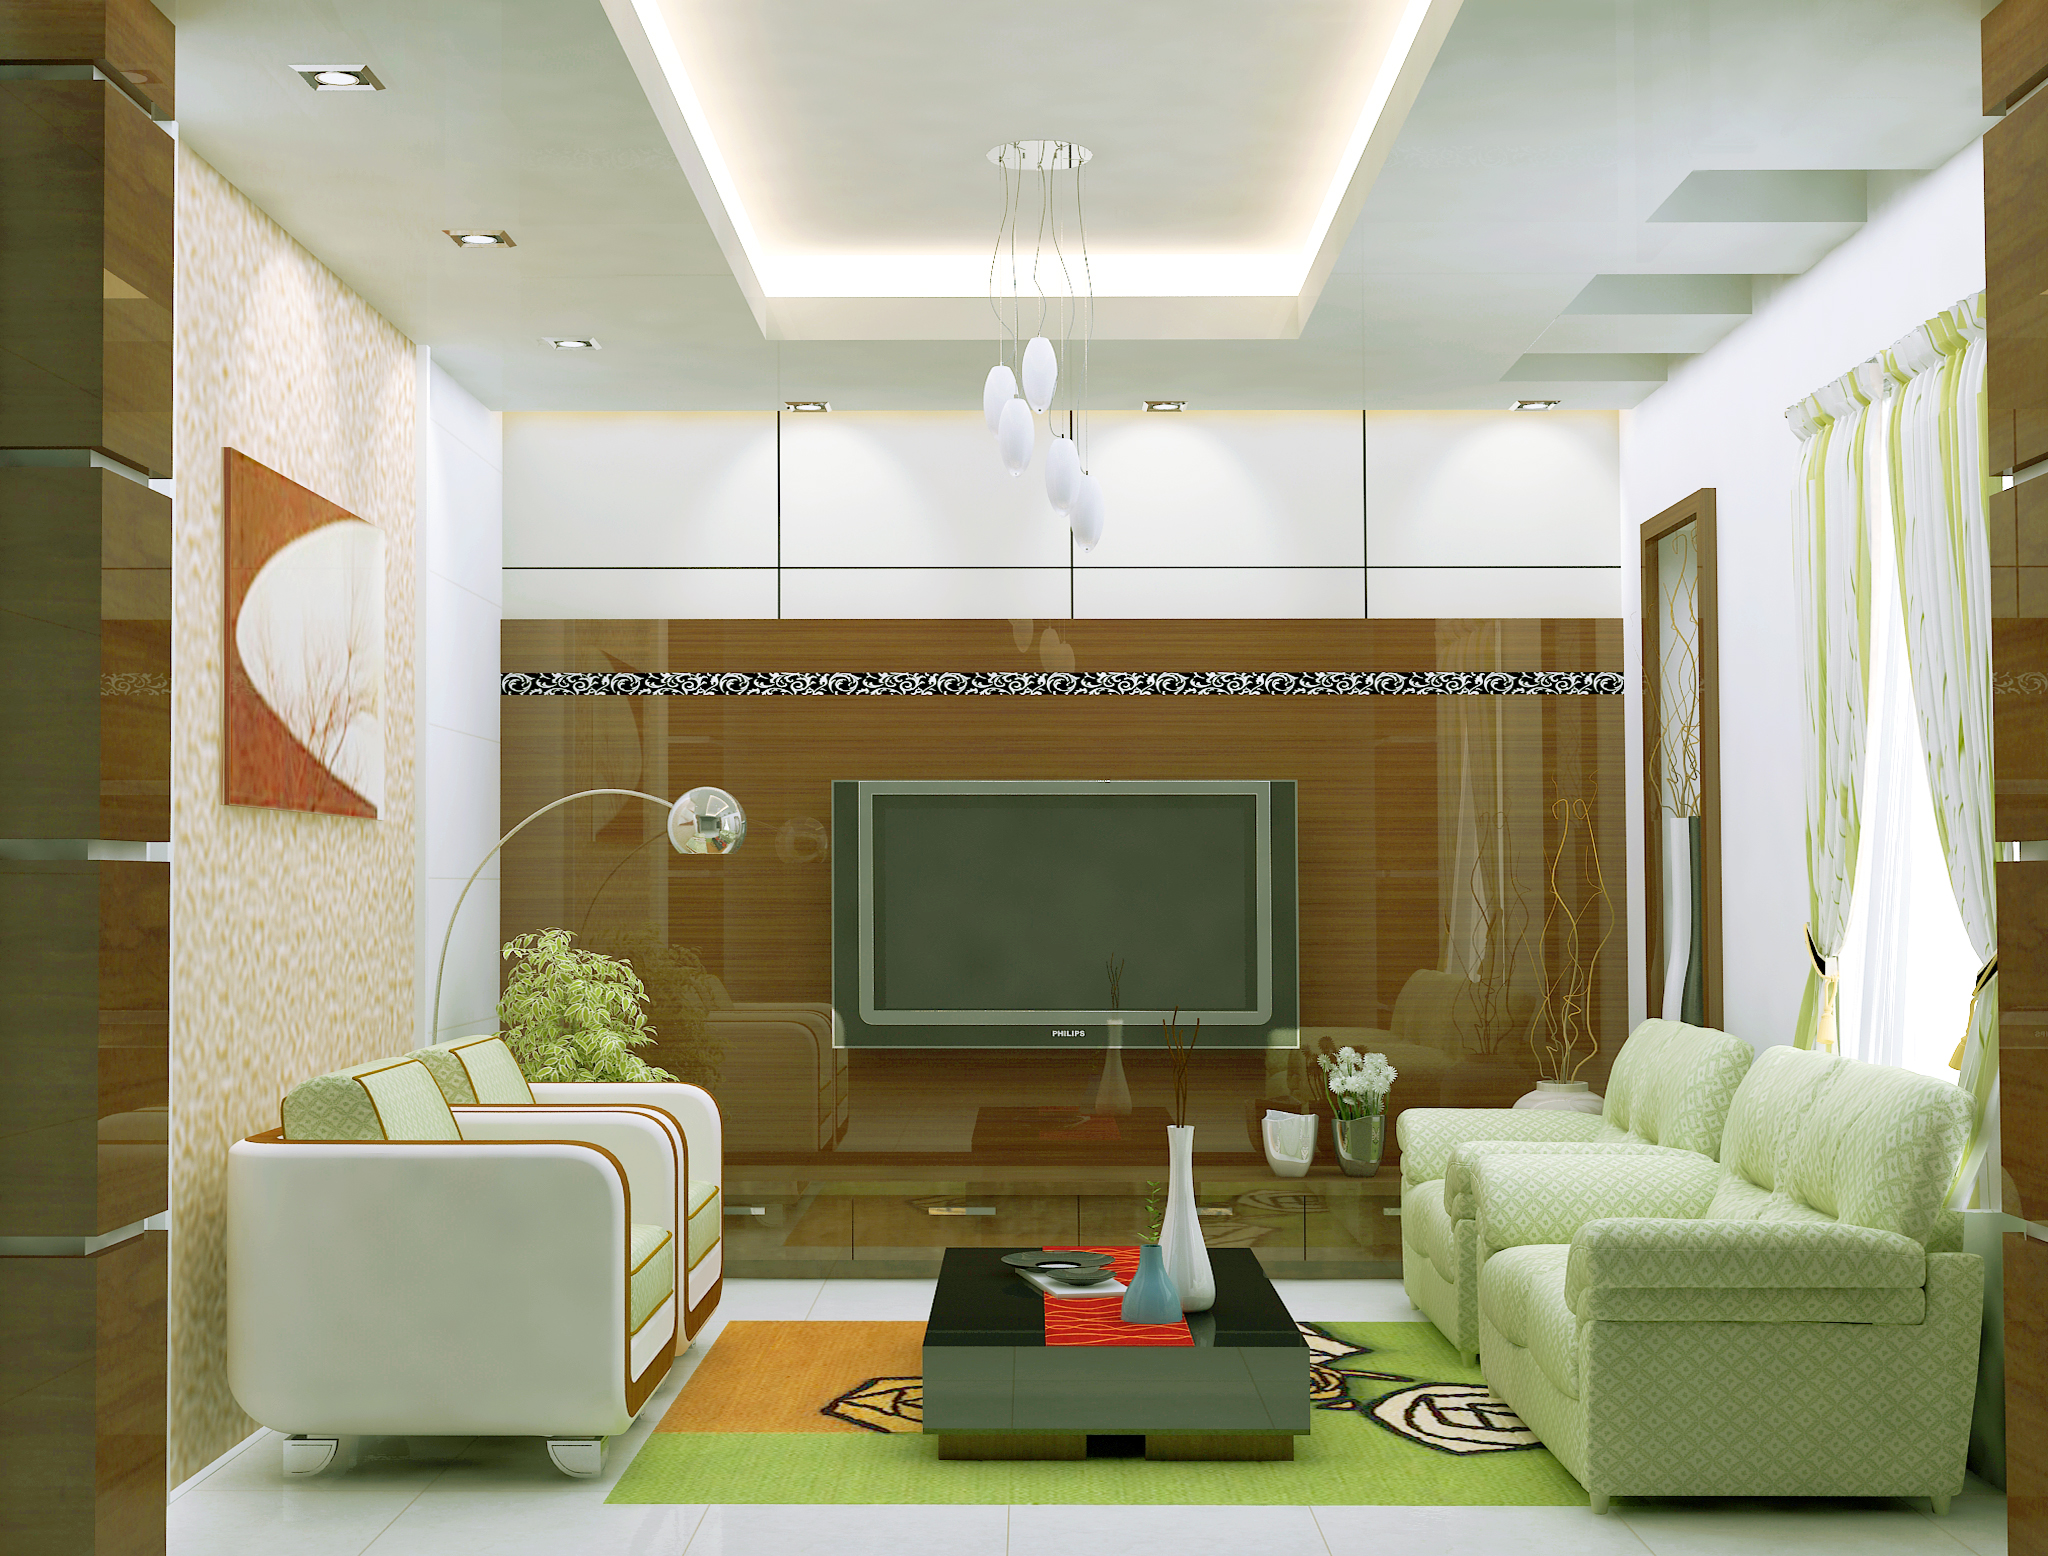 30 Best Interior Design Ideas 